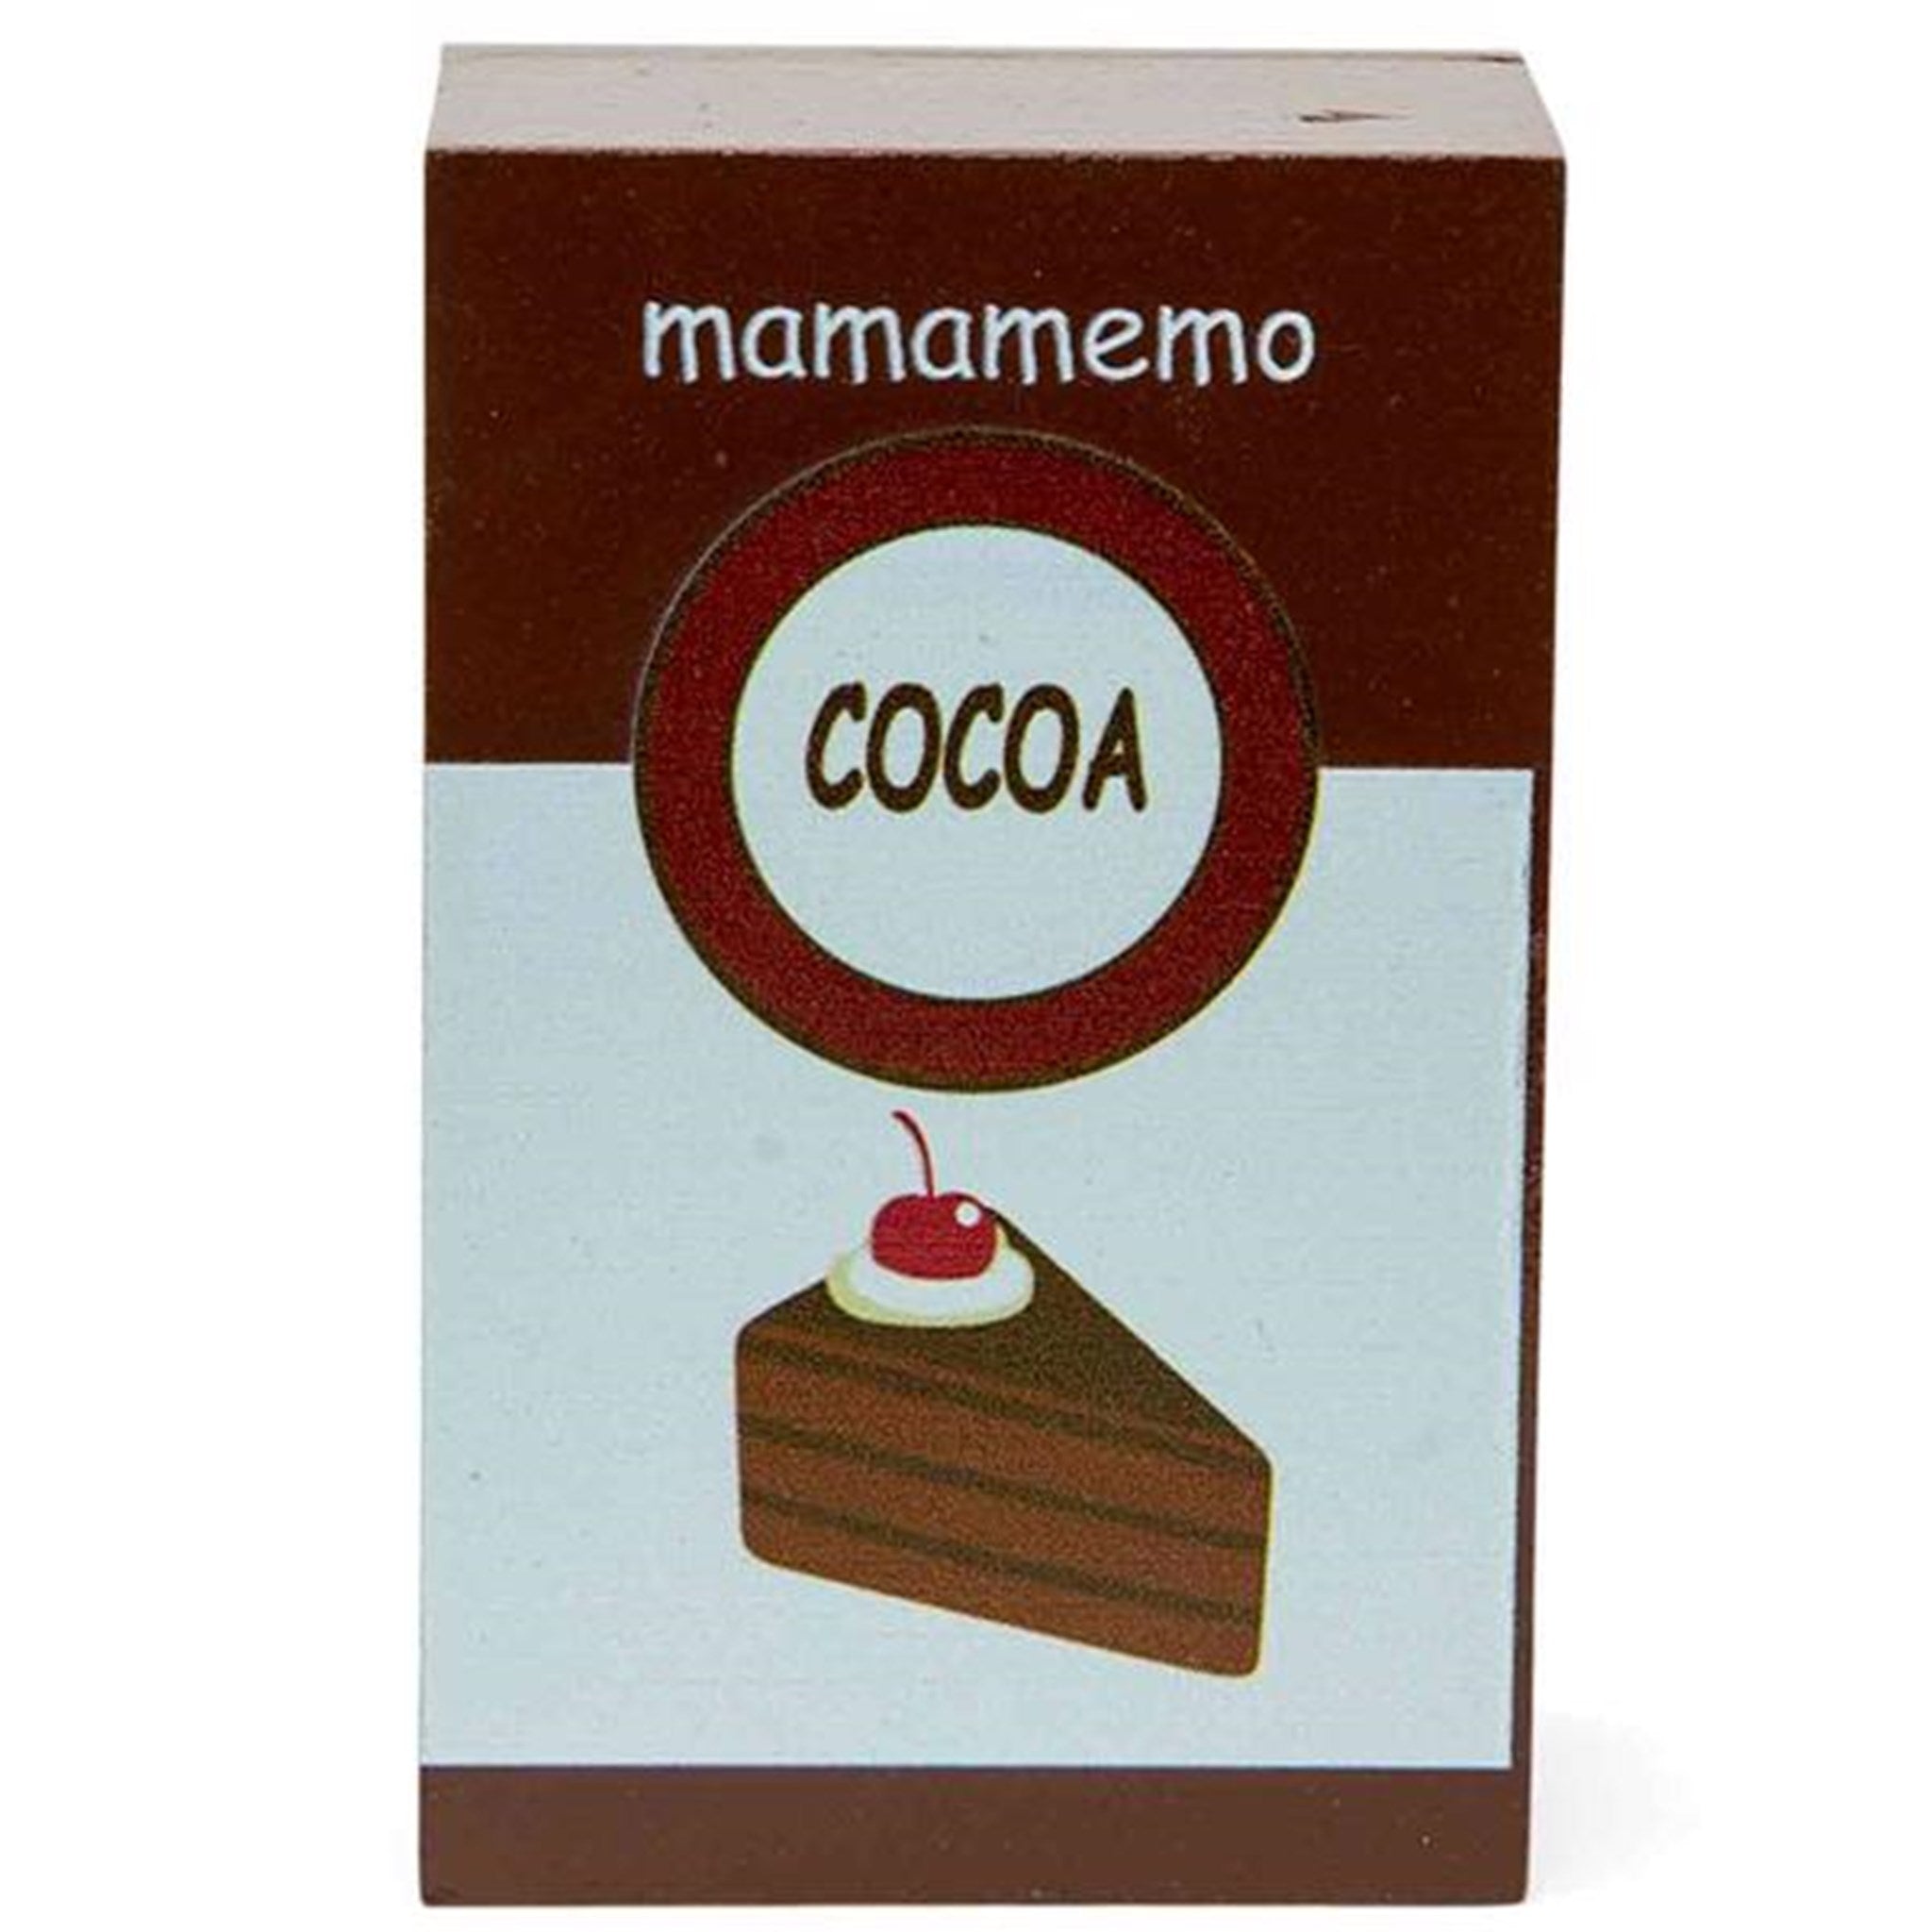 MaMaMemo Cocoa